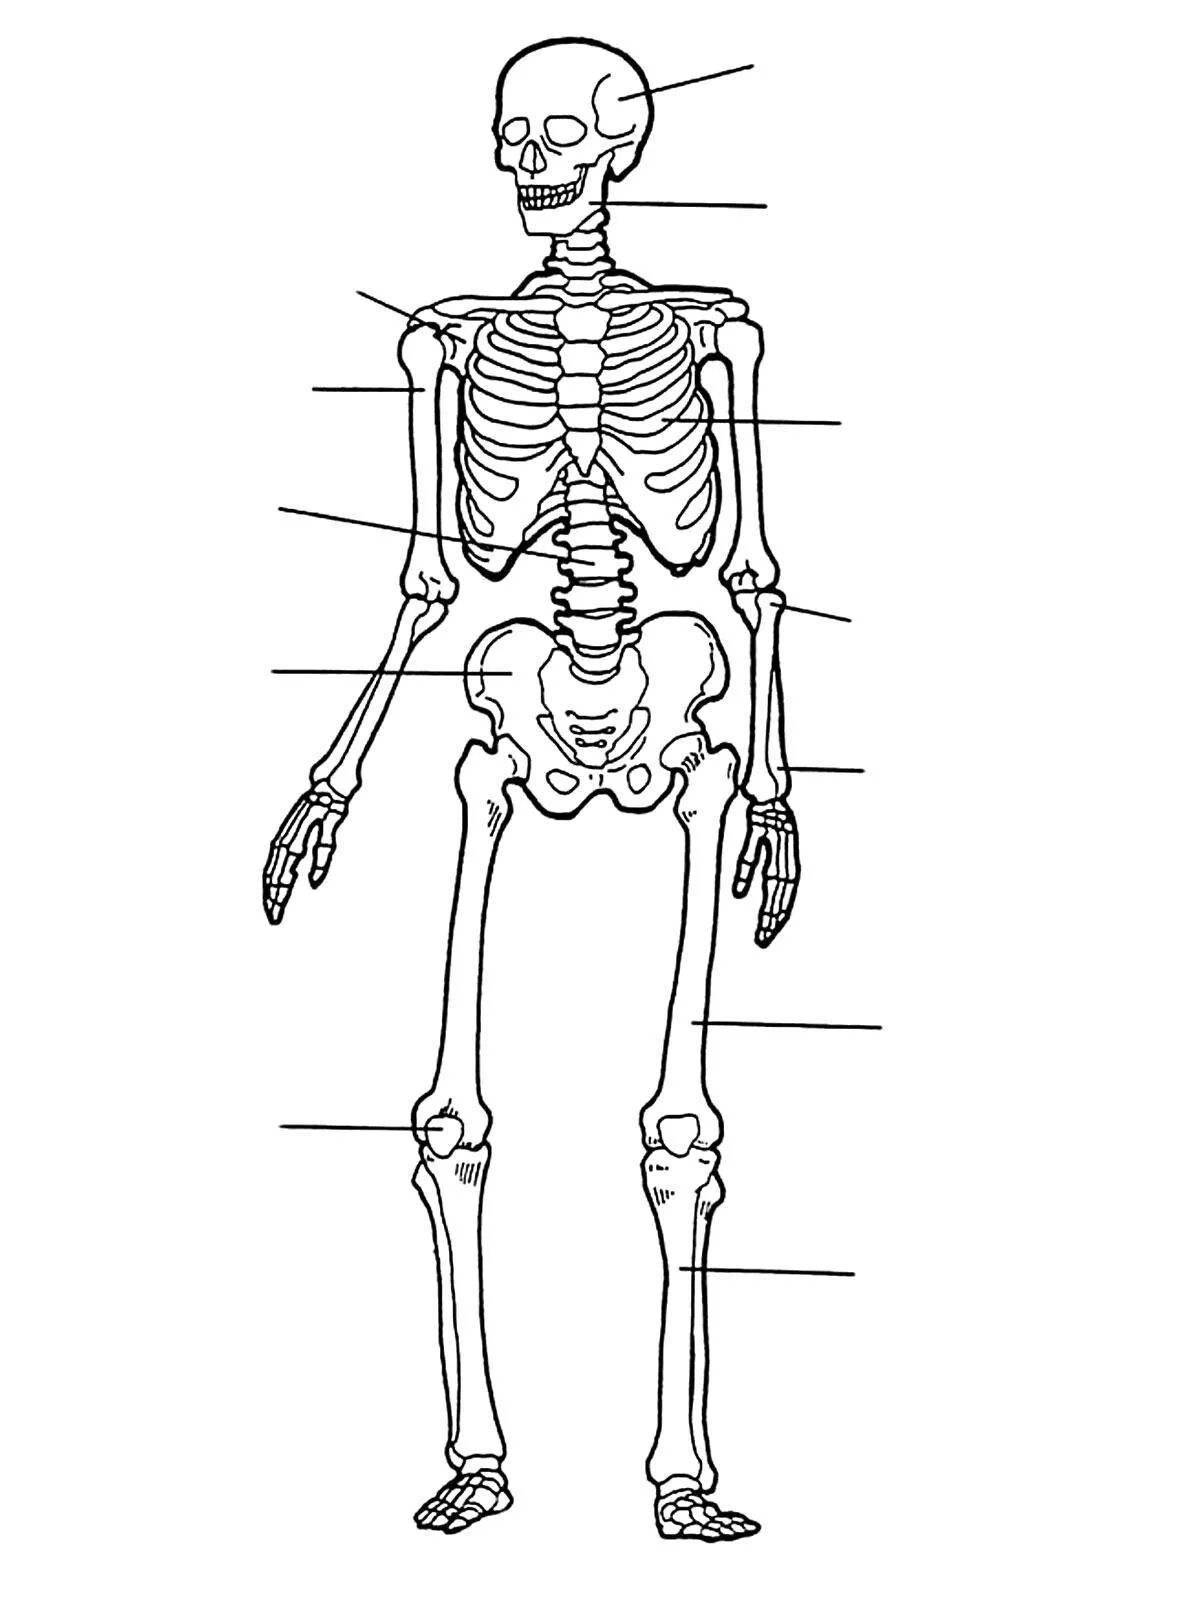 Красочная раскраска человеческого скелета для детей